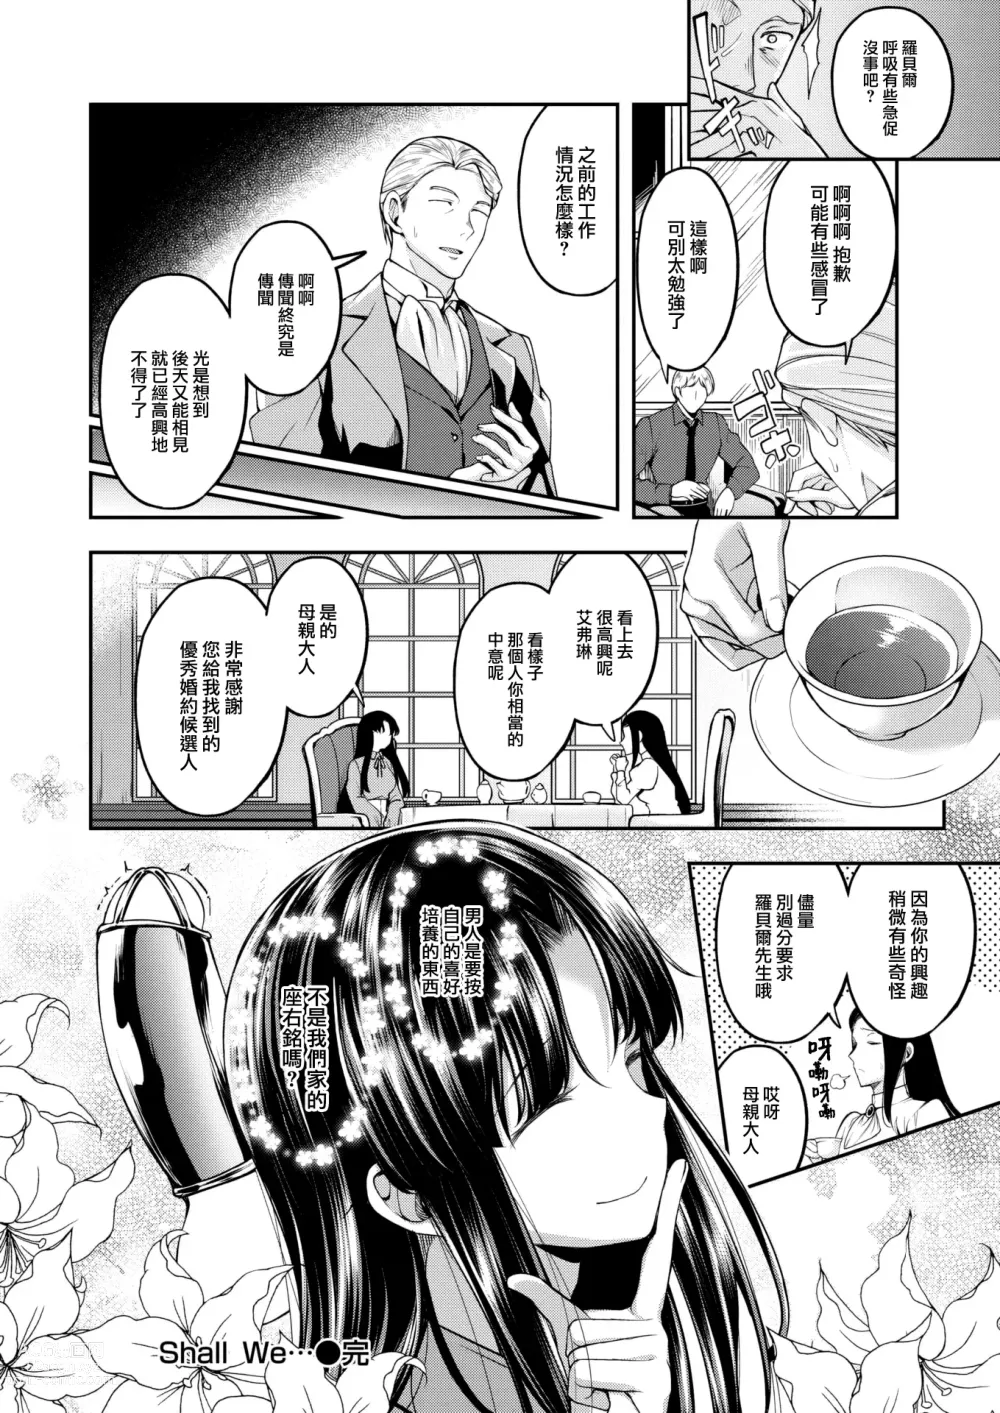 Page 23 of manga Shall We…